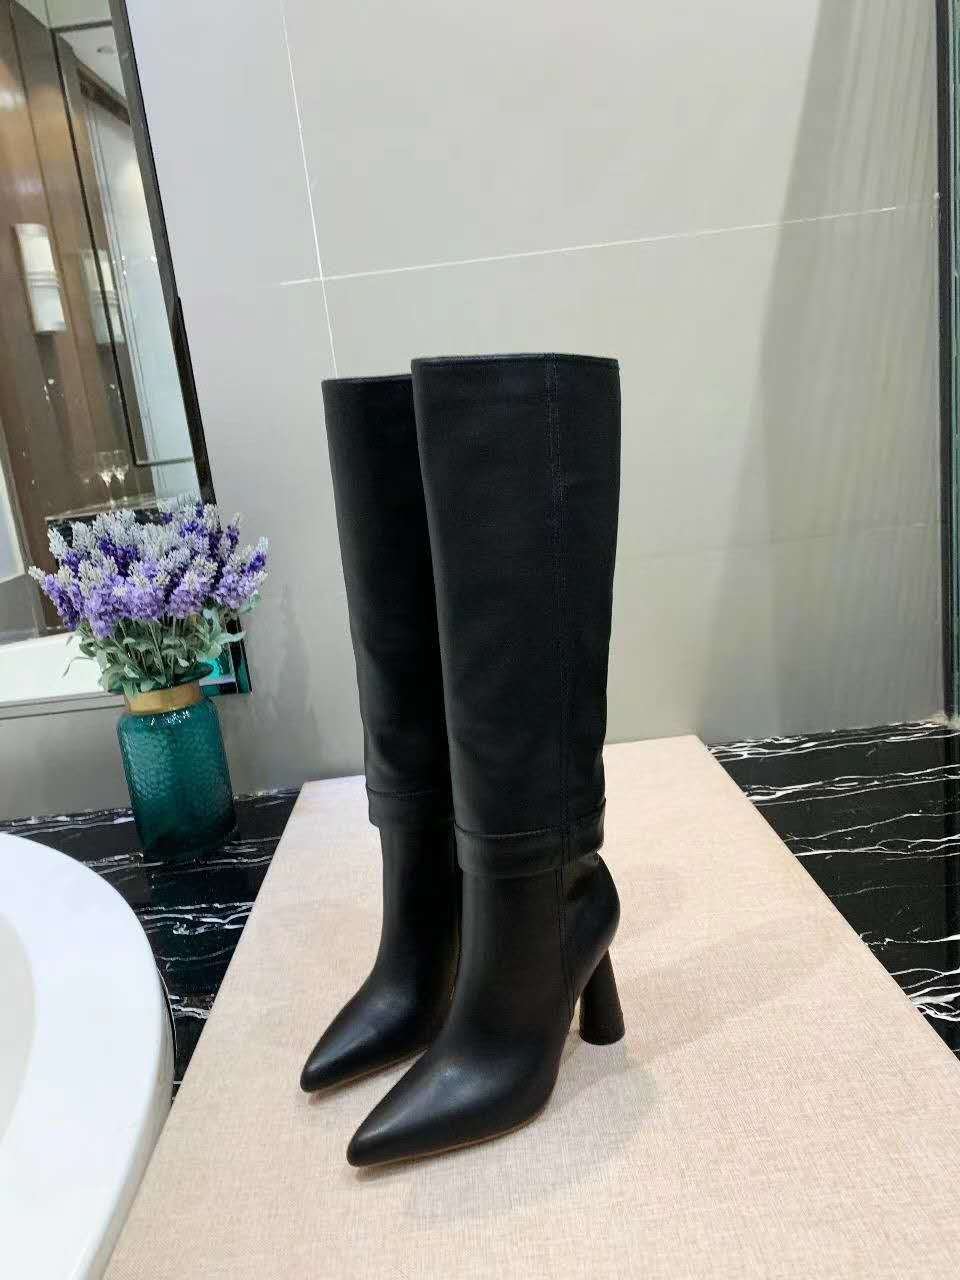 Women Shoes Jacquemus Boots 9cm Heel Black Leahter Fashion Show Catwalk ...